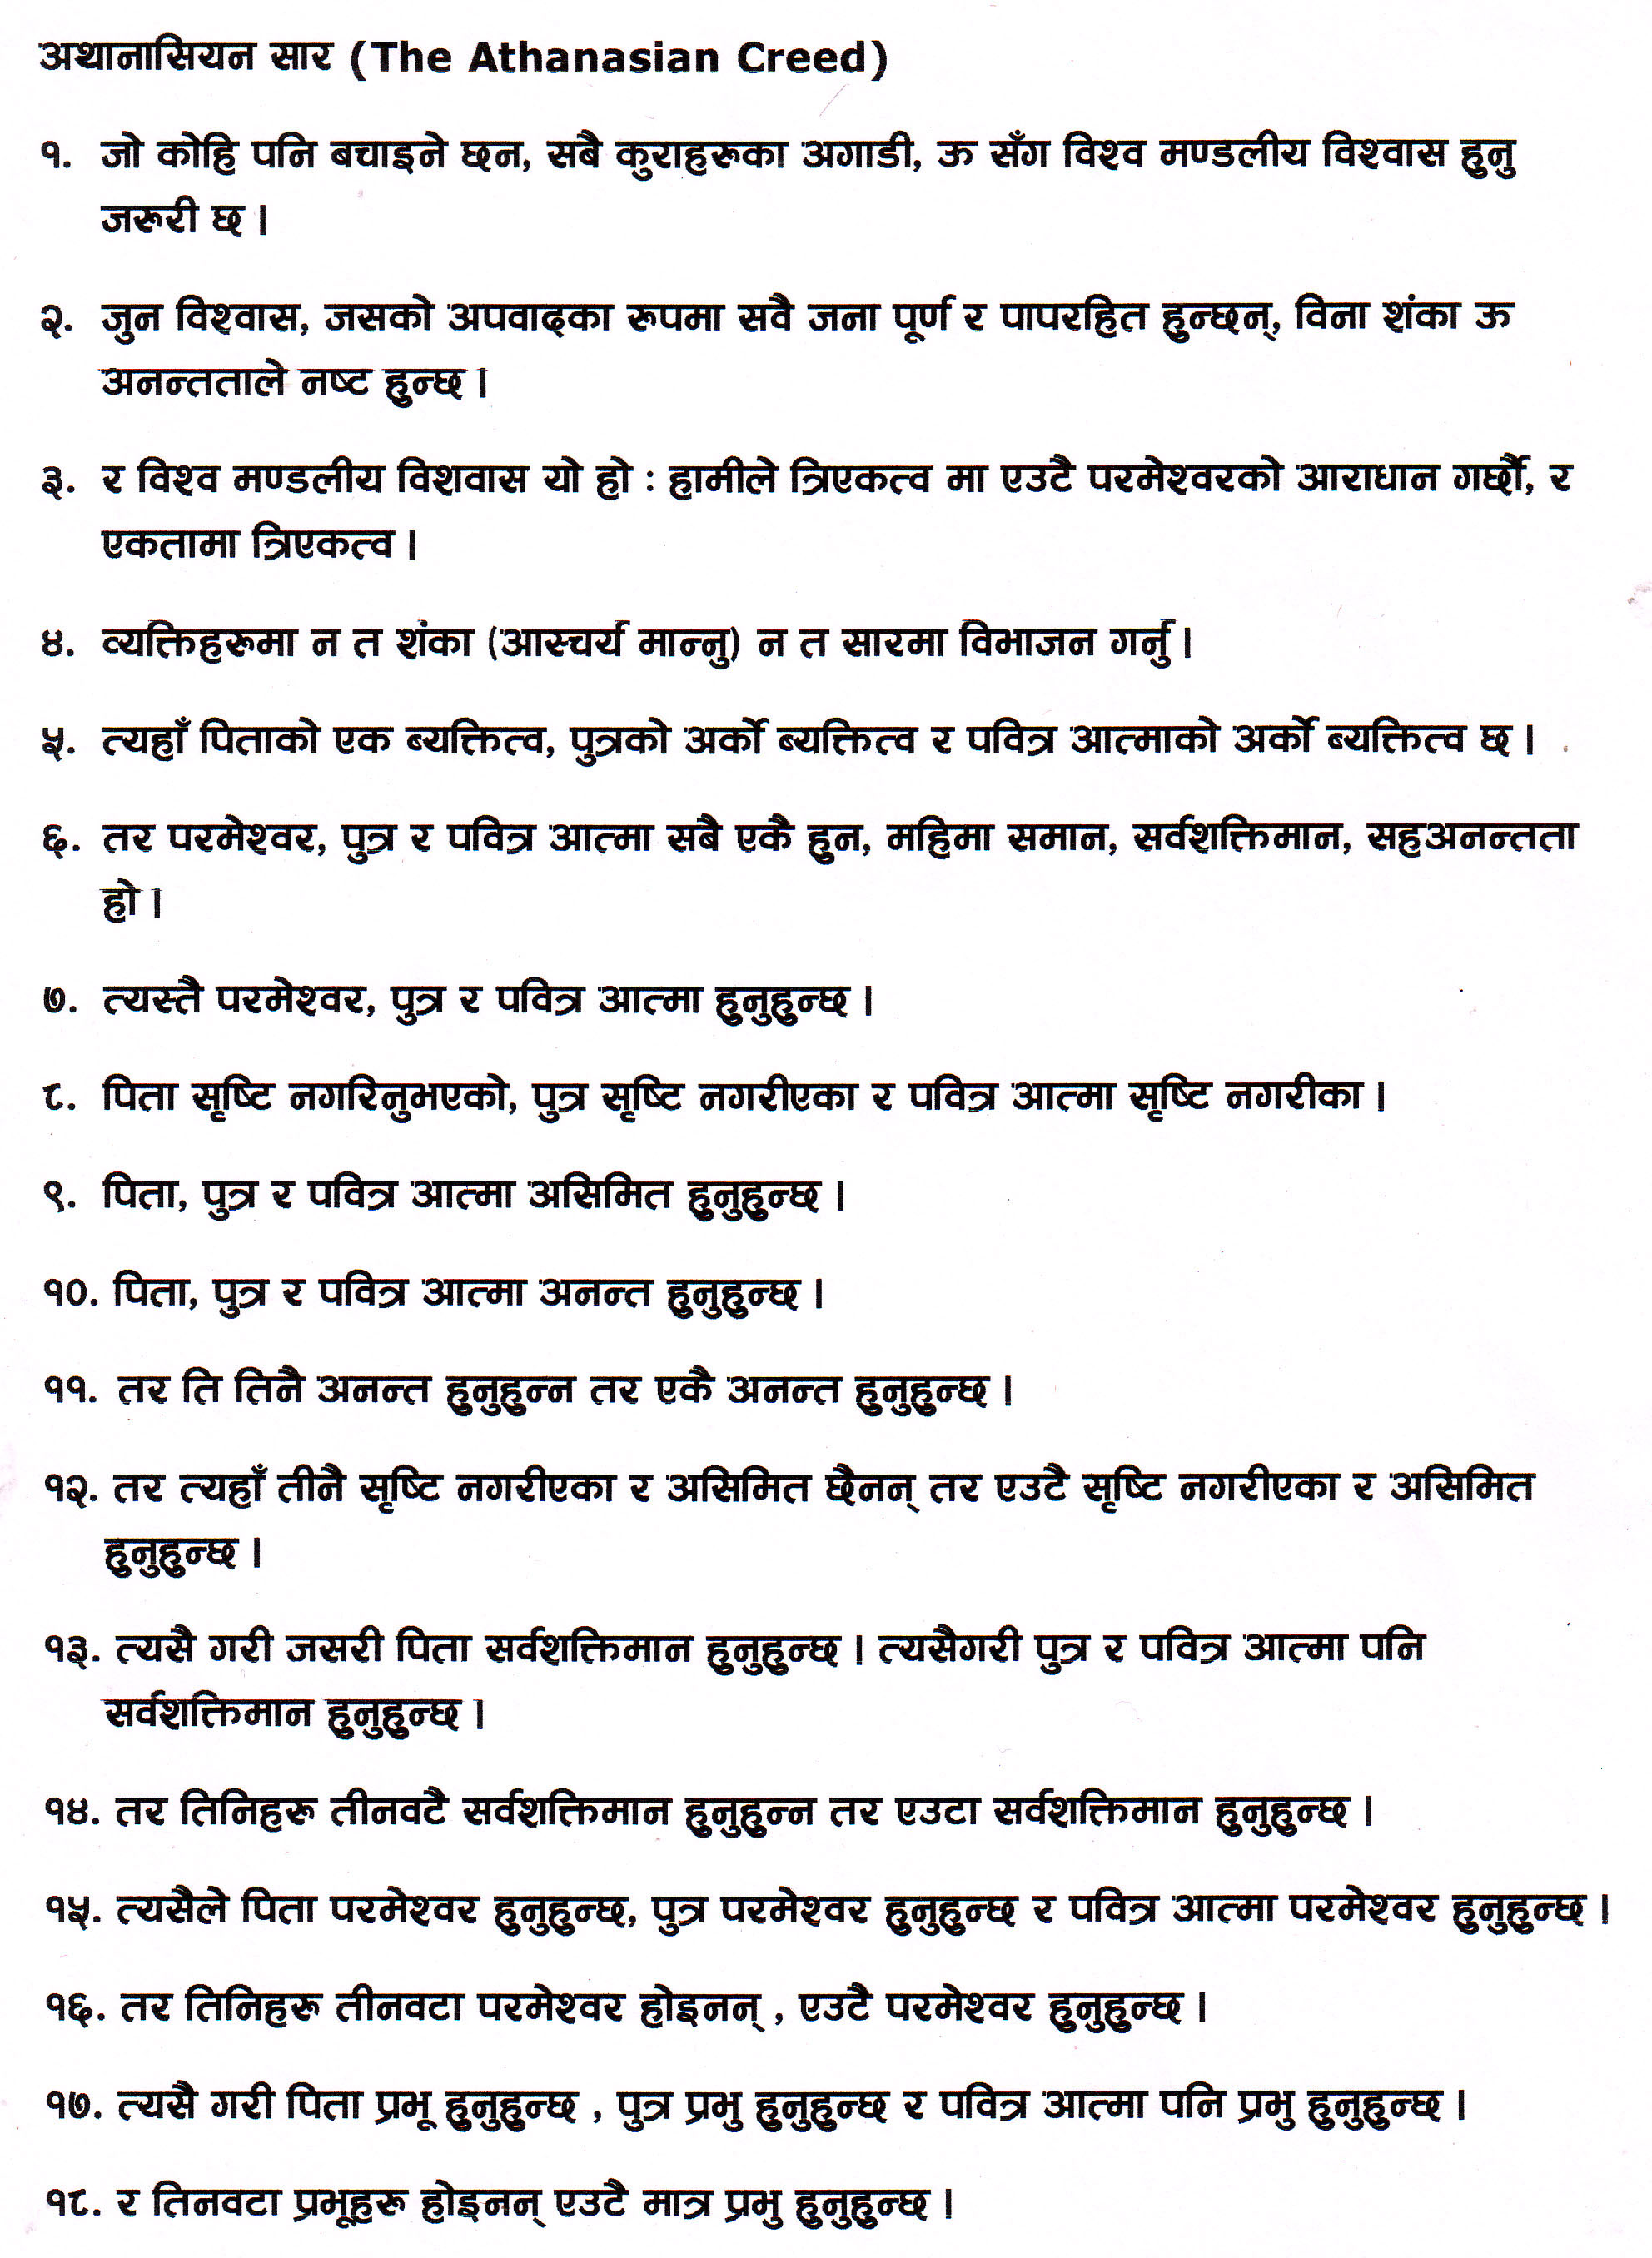 Nepali Athanasian Creed part 1